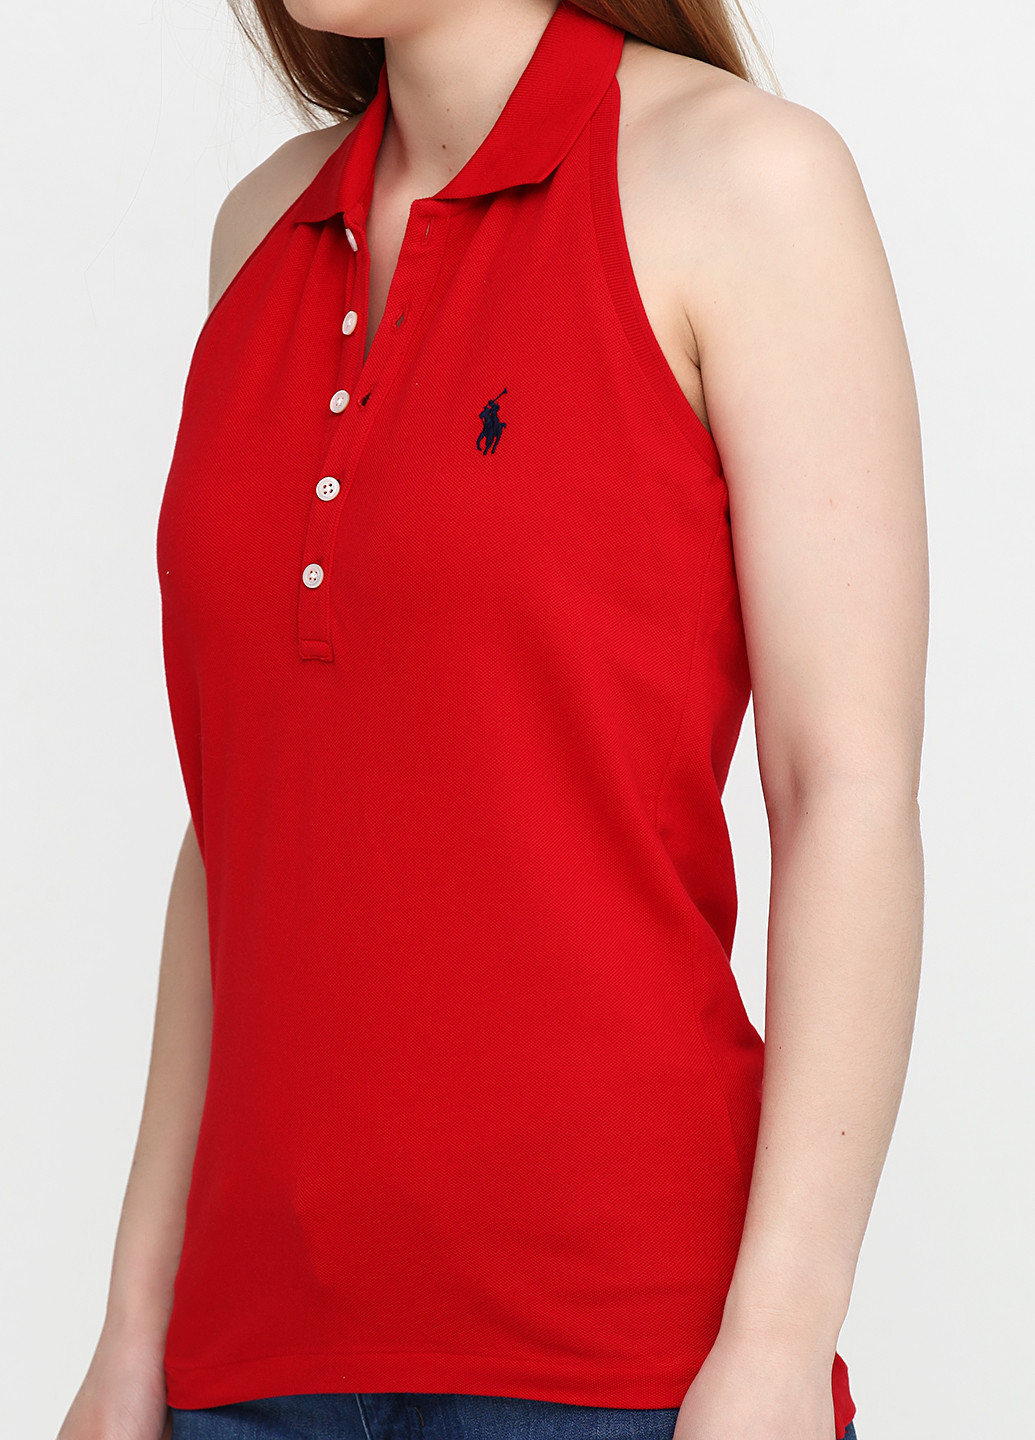 Красная женская футболка-поло Ralph Lauren с логотипом